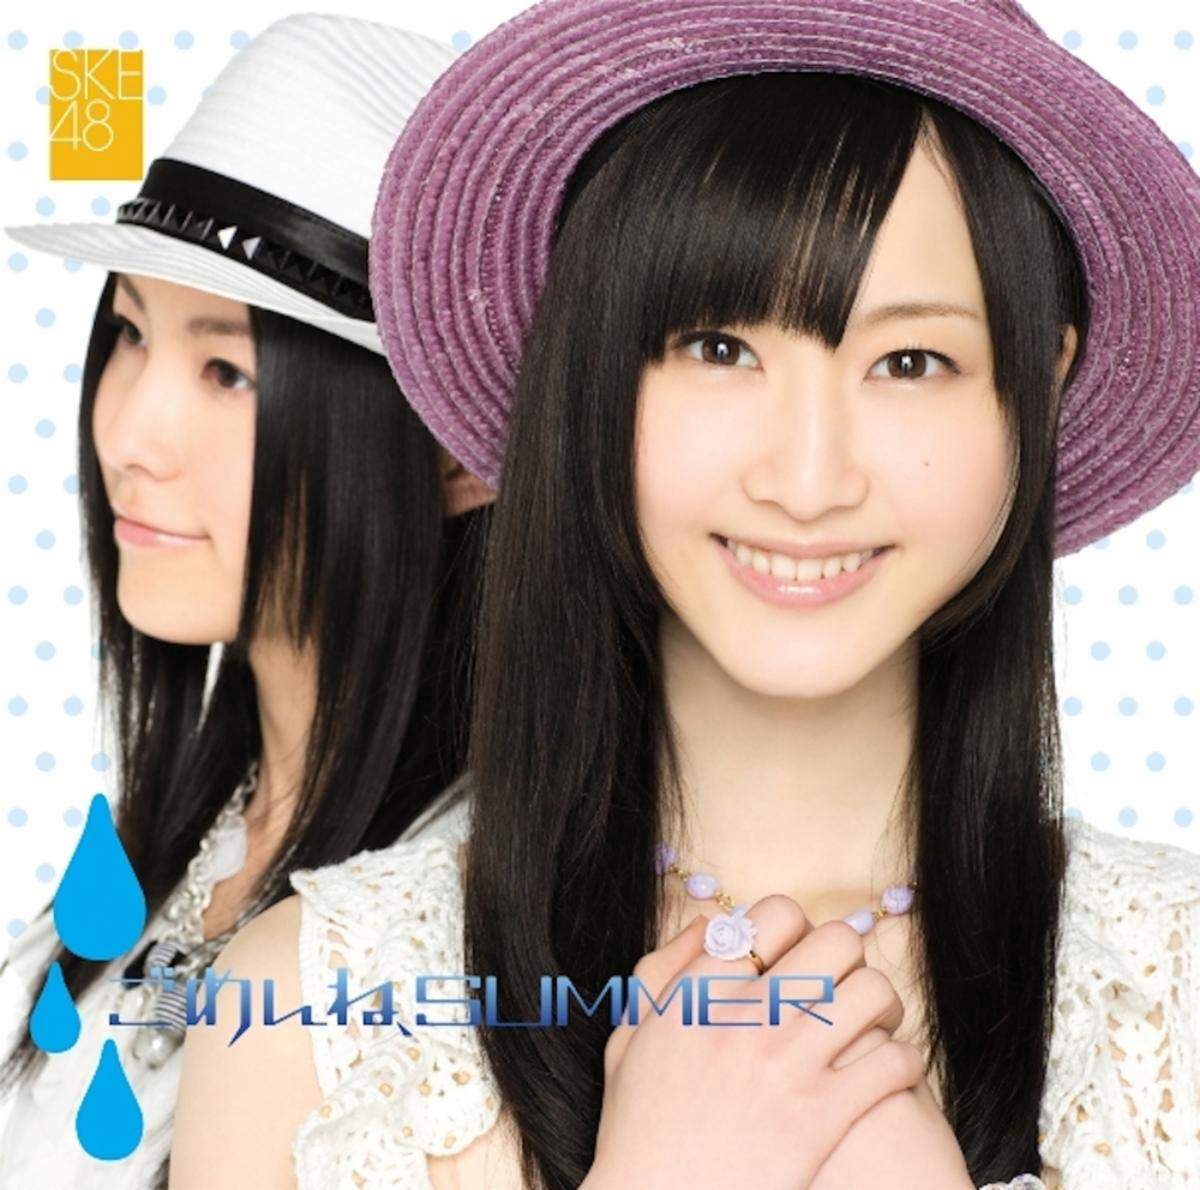 SKE48 - 羽豆岬 (Hazumisaki) Cover